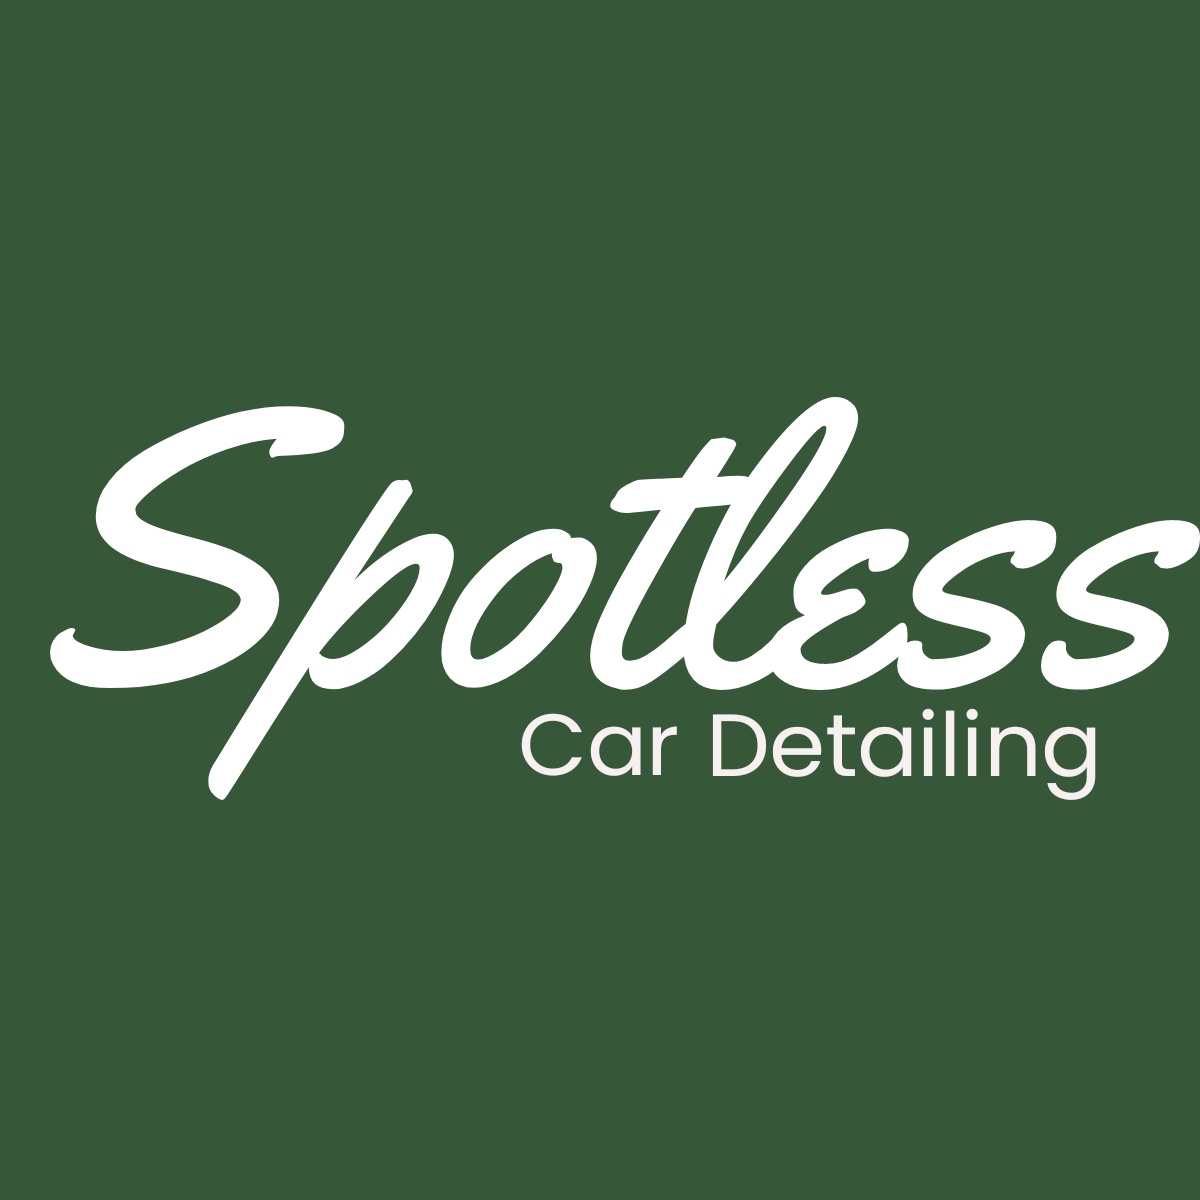 Spotless Auto Detailing xto